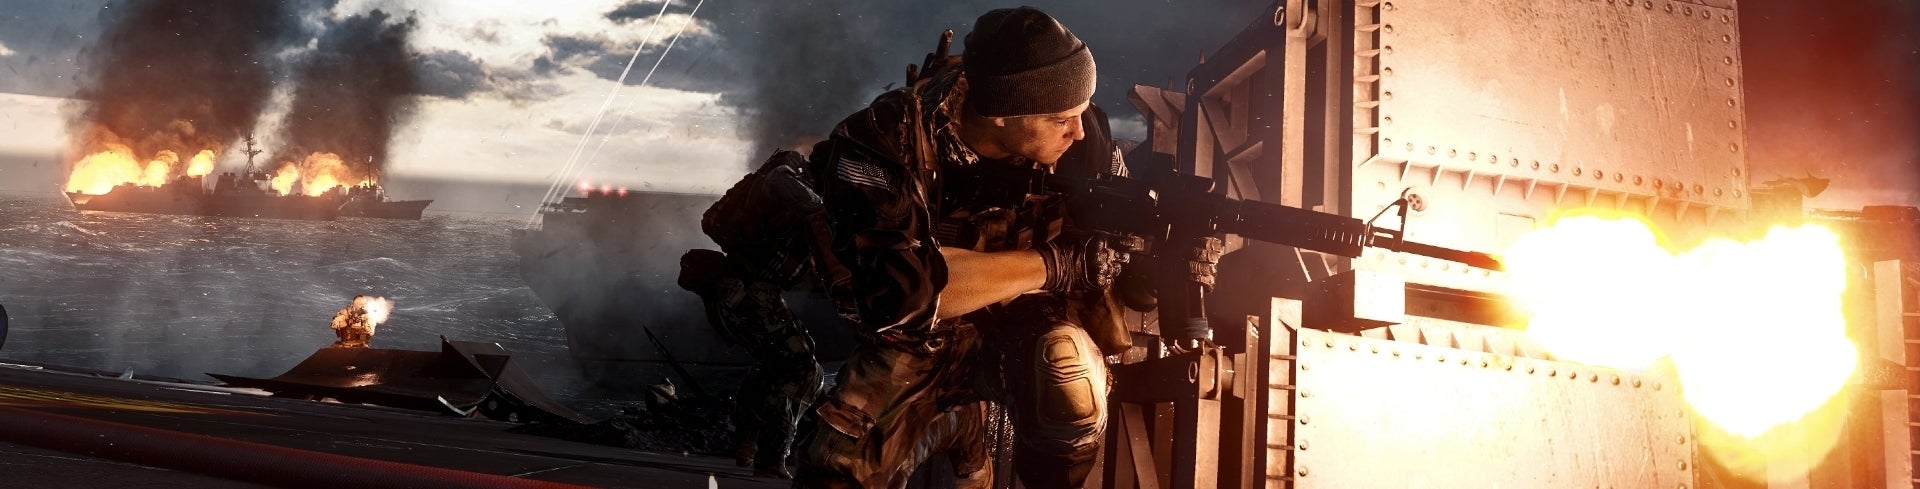 Bilder zu Battlefield 4 - Test (Mehrspieler und Wertung)